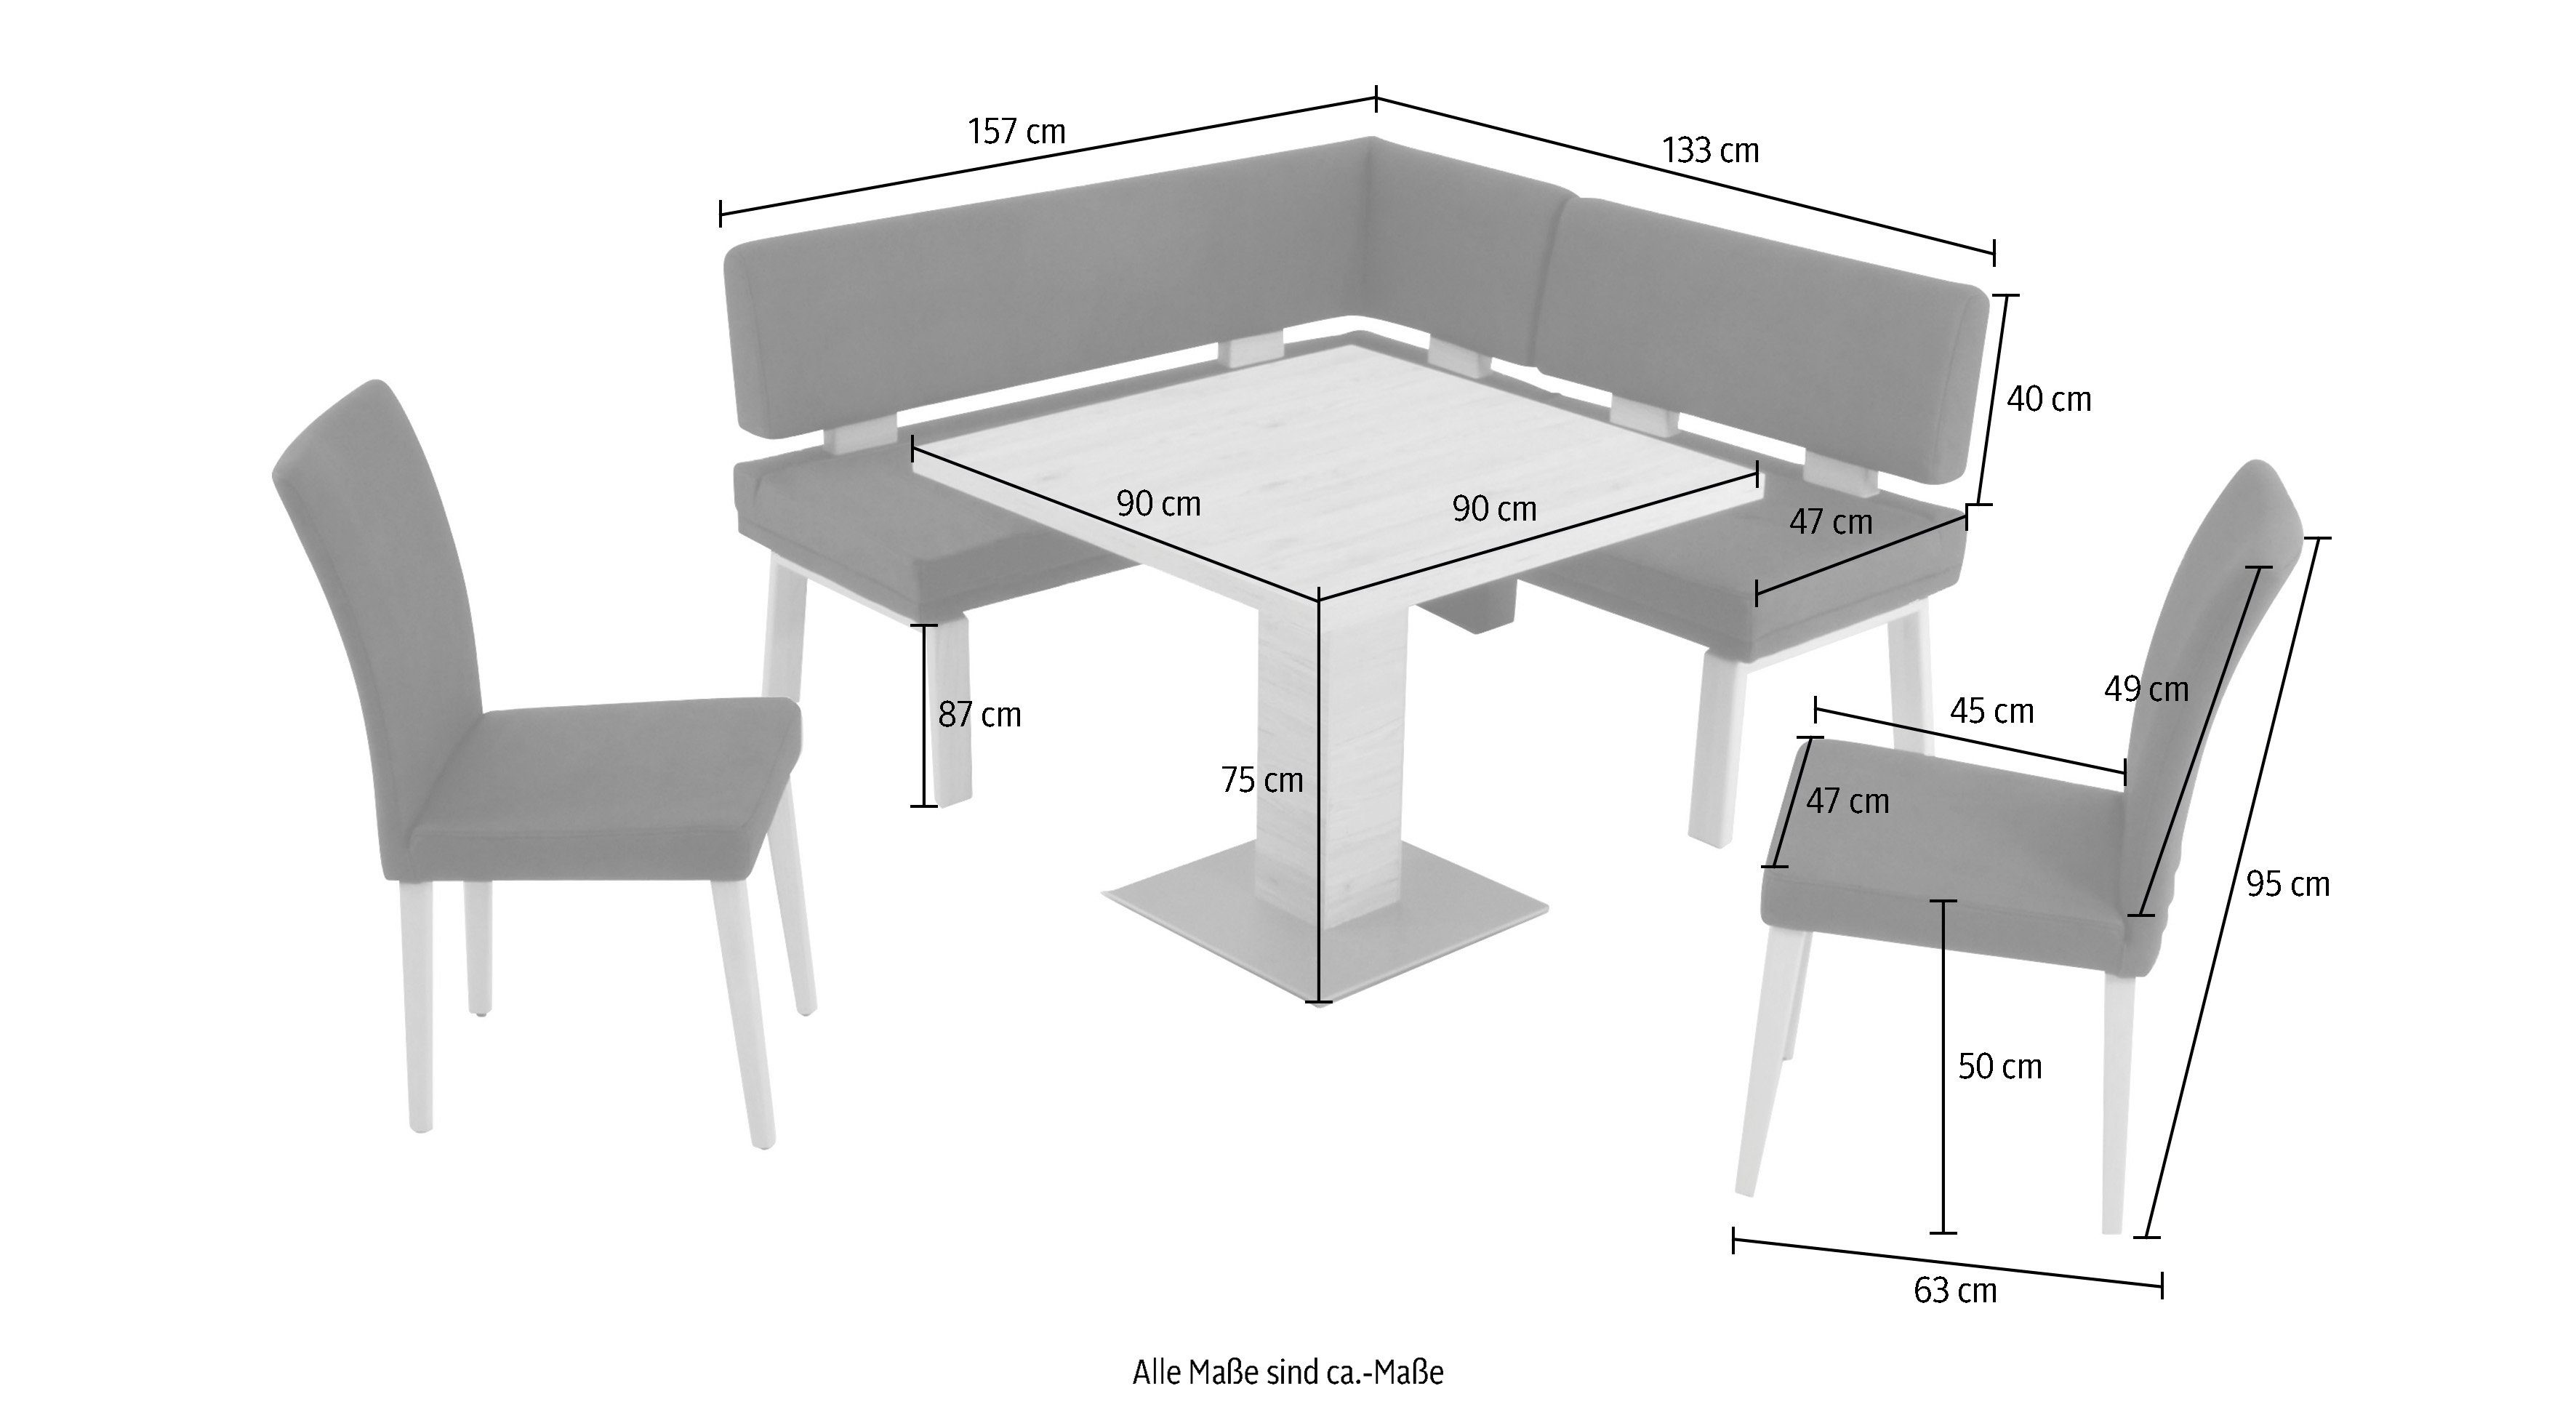 4-Fußholzstühle Wohnen Tisch K+W Santos Eckbankgruppe und Eiche Komfort gleichschenklig 90x90cm, I, & zwei 157cm, darkgrey